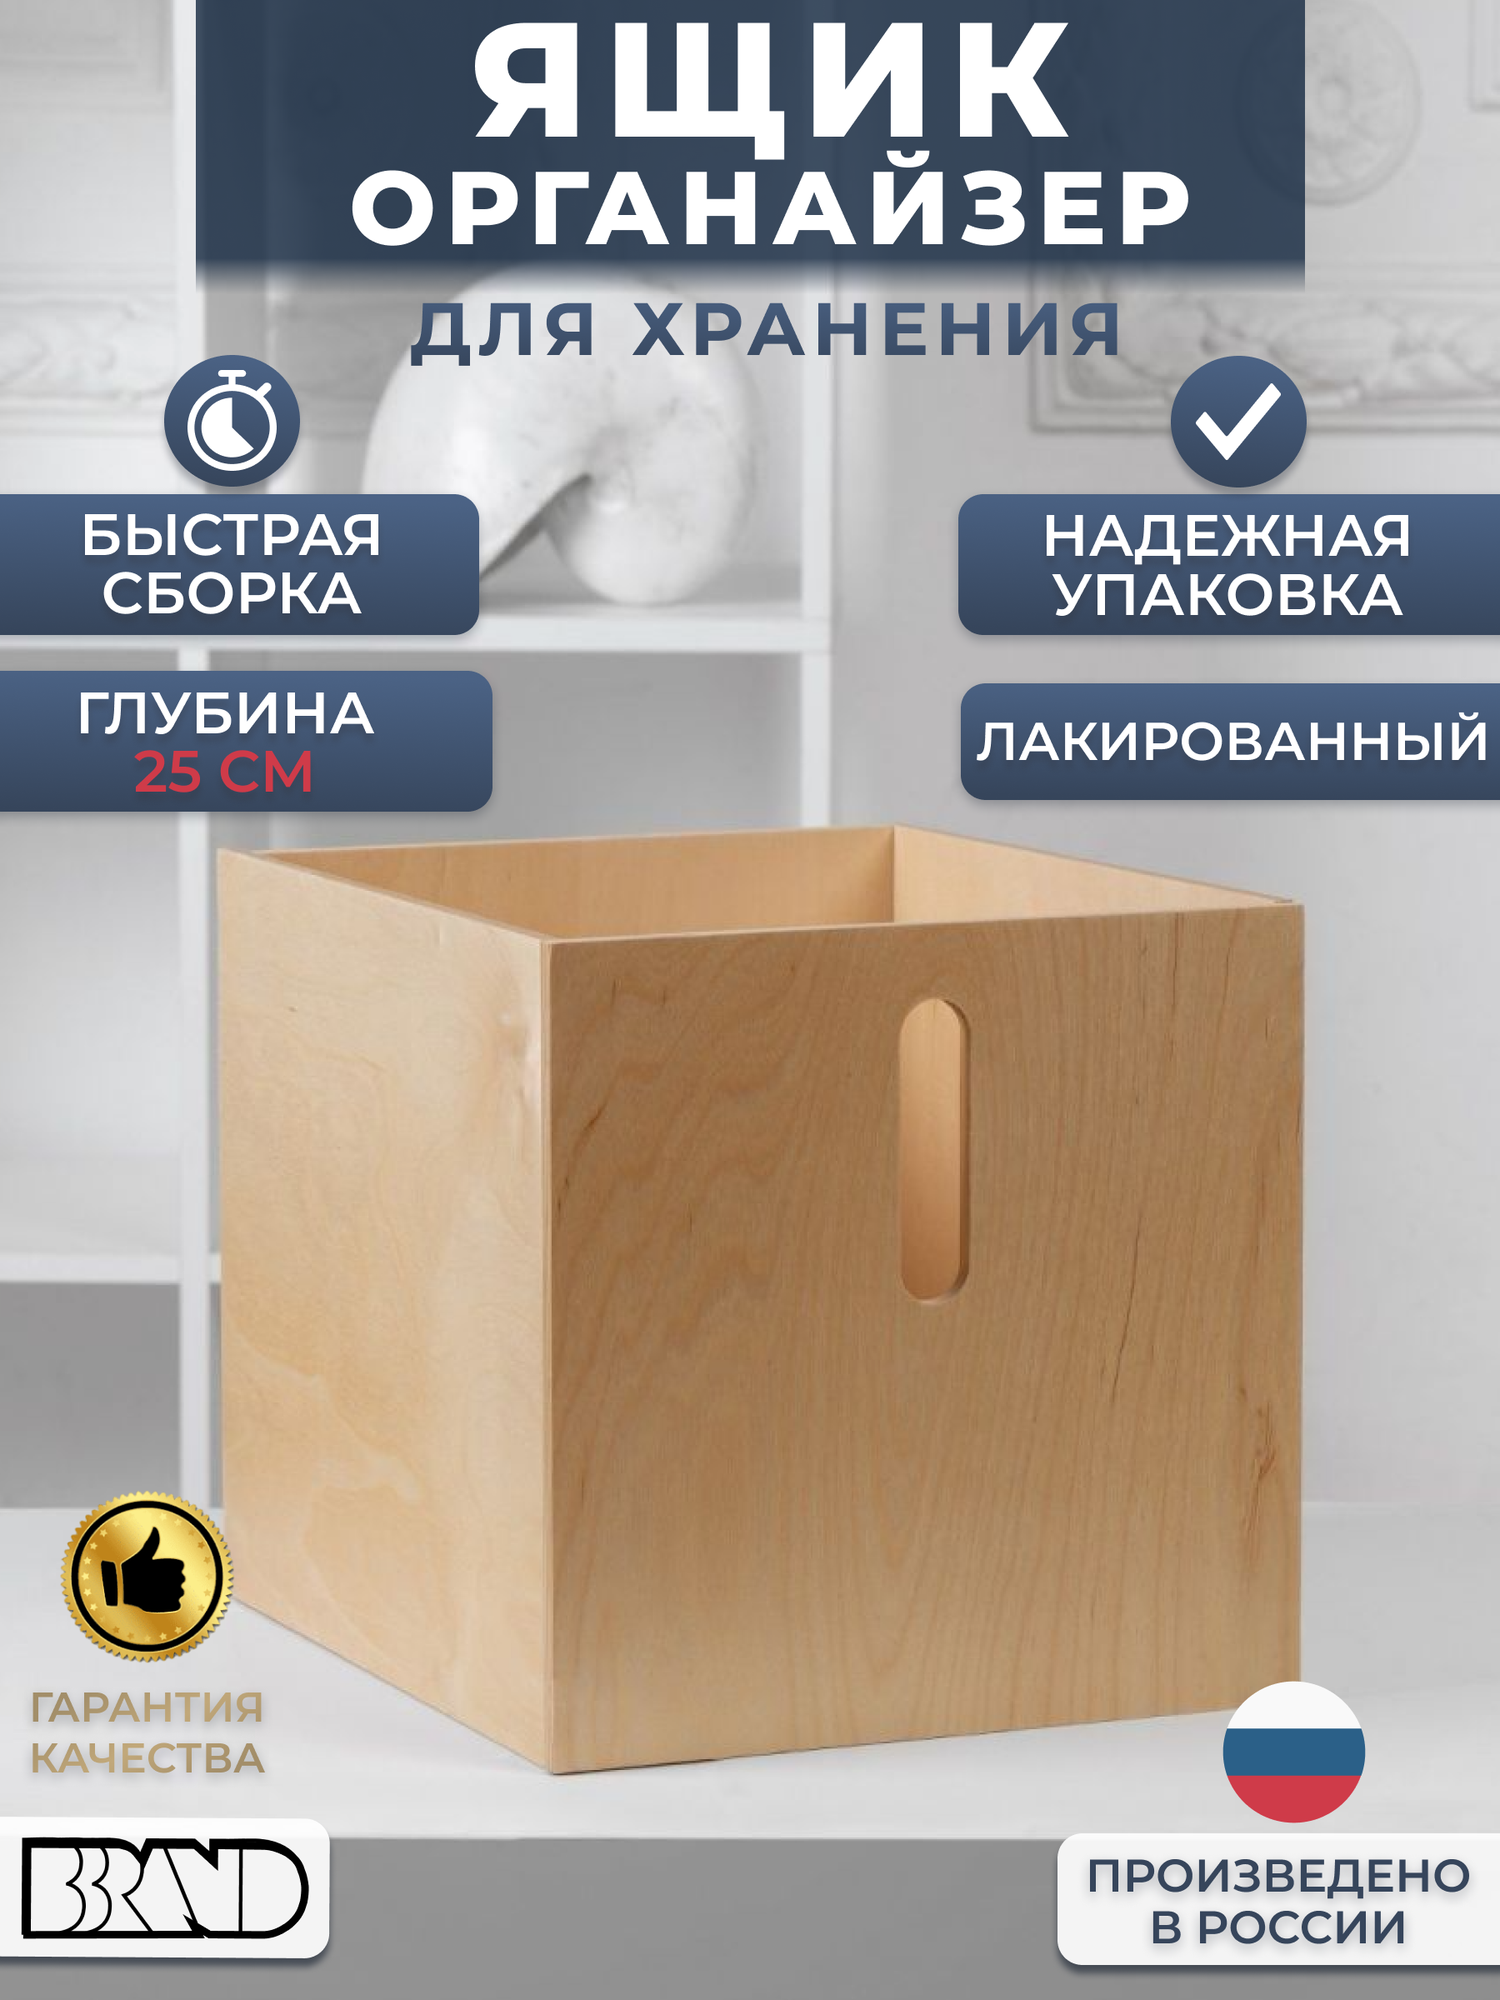 Коробка деревянная органайзер для хранения вещей